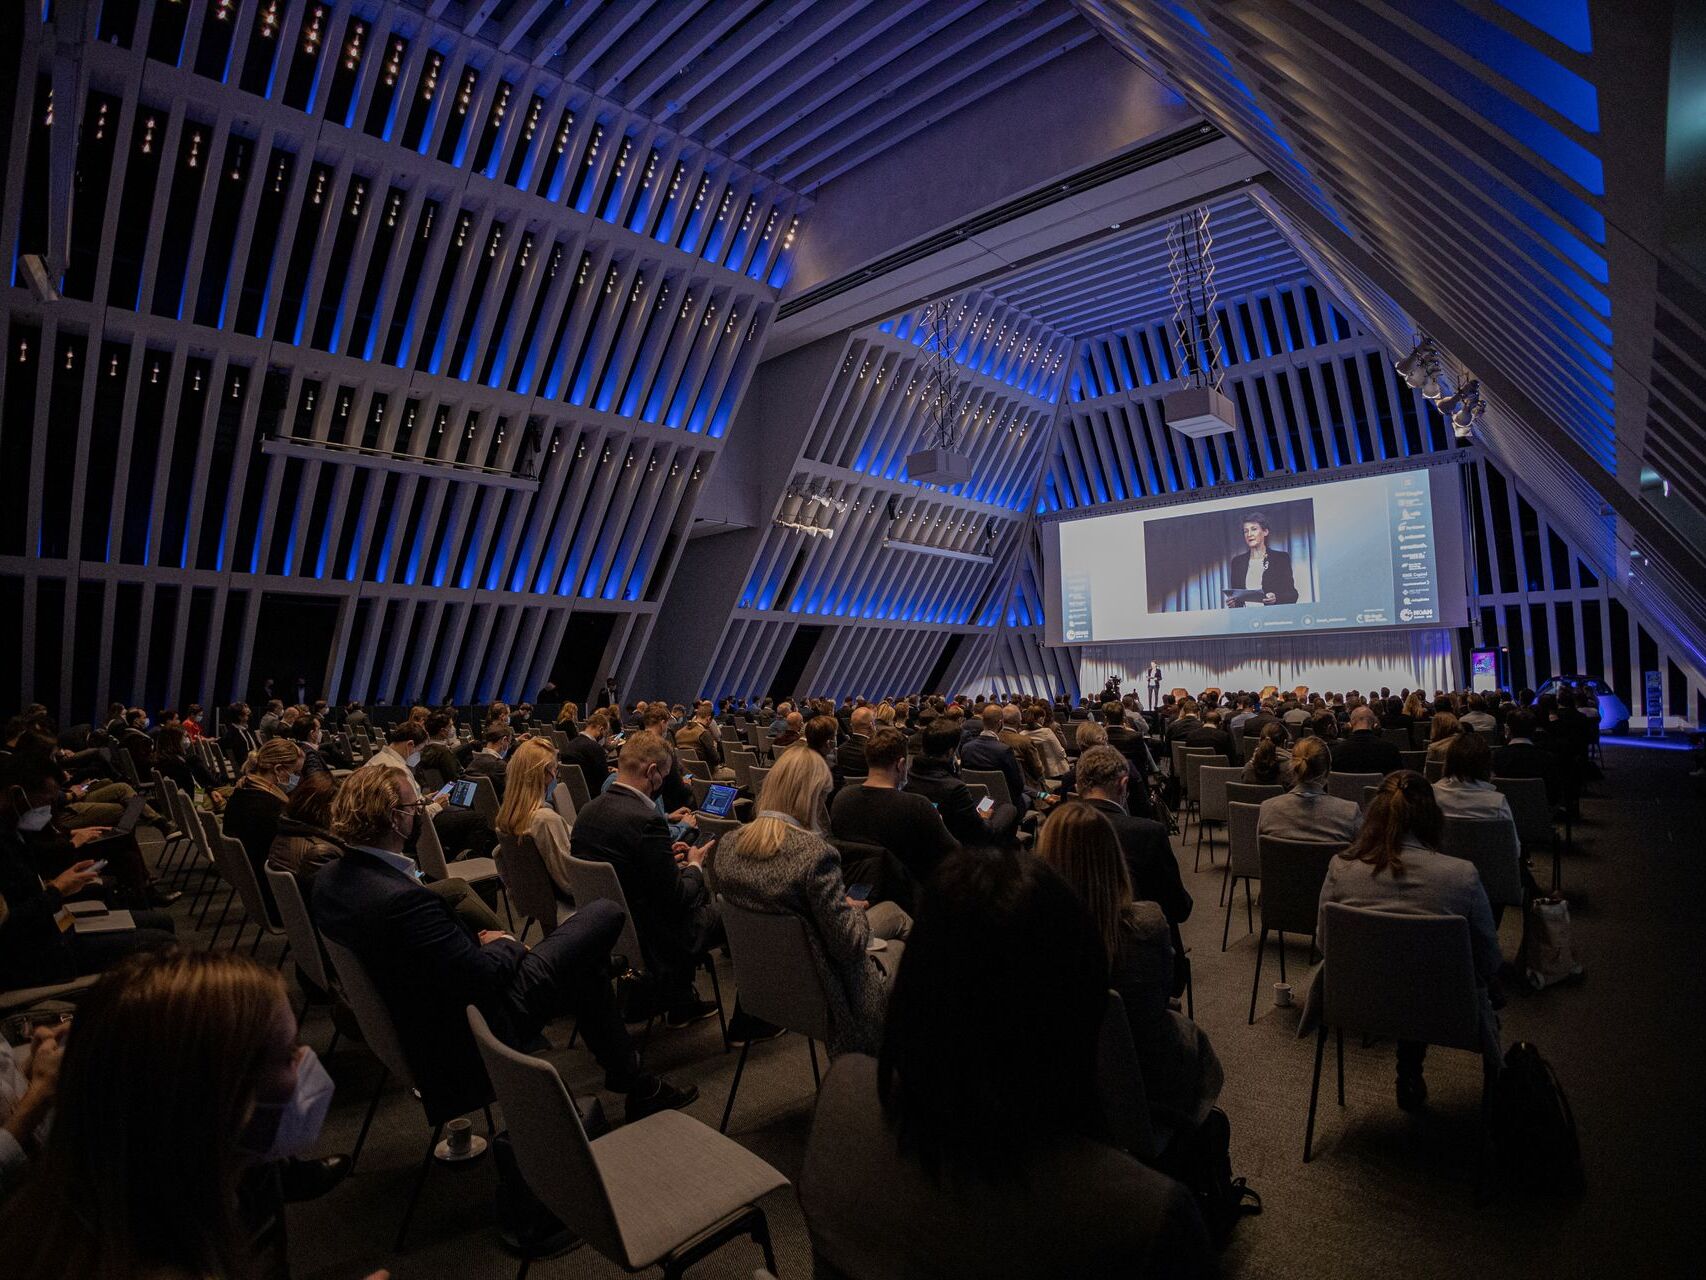 Audiență și vorbitori prezenți la „The Circle” din Zurich, pe 6 decembrie, în prima zi a „Conferinței NOAH” 2021: Simonetta Sommaruga, șefa Departamentului Federal de Mediu, Transport, Energie și Comunicații (DETEC)